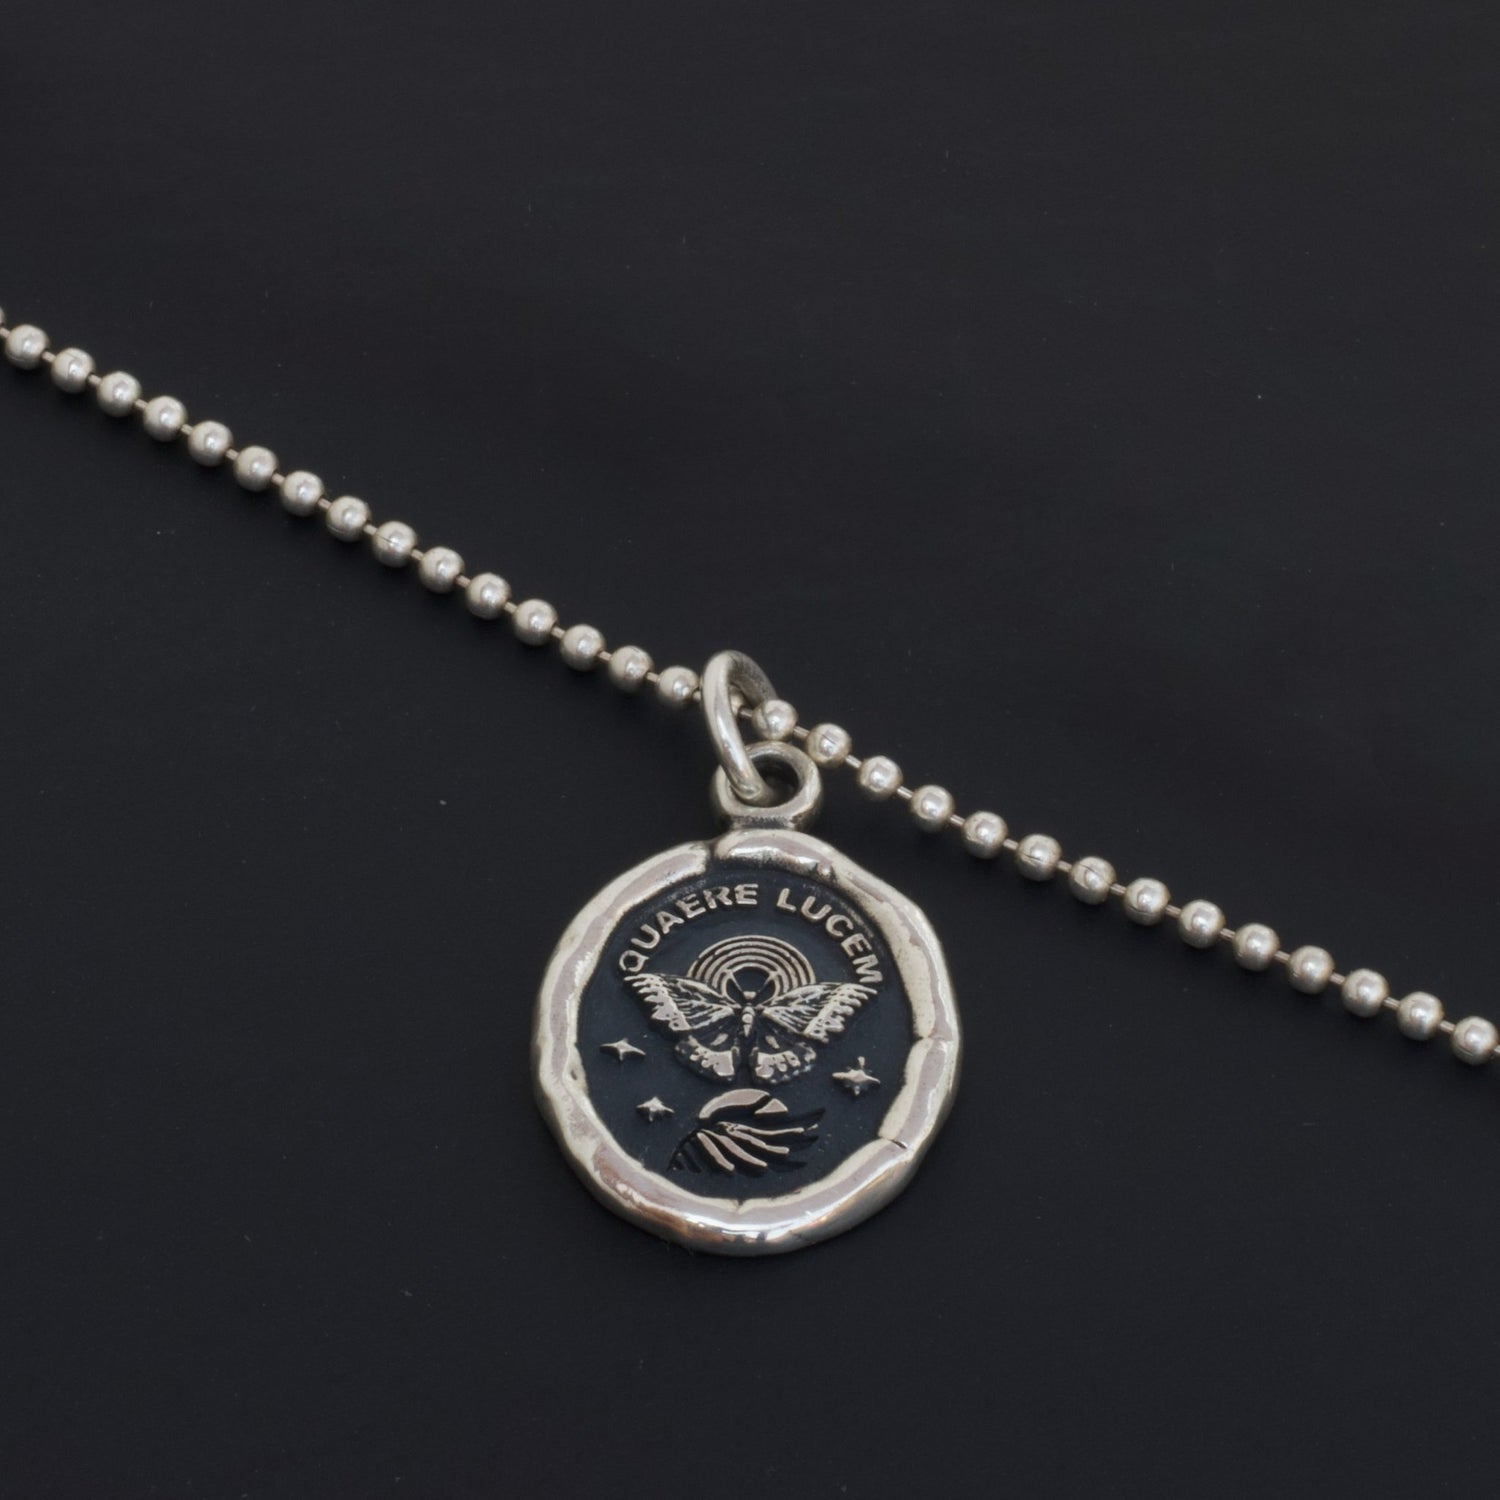 Collar de Mariposa en plata 950 con grabado "QUAERE LUCEM" simbolizando transformación y búsqueda de luz.